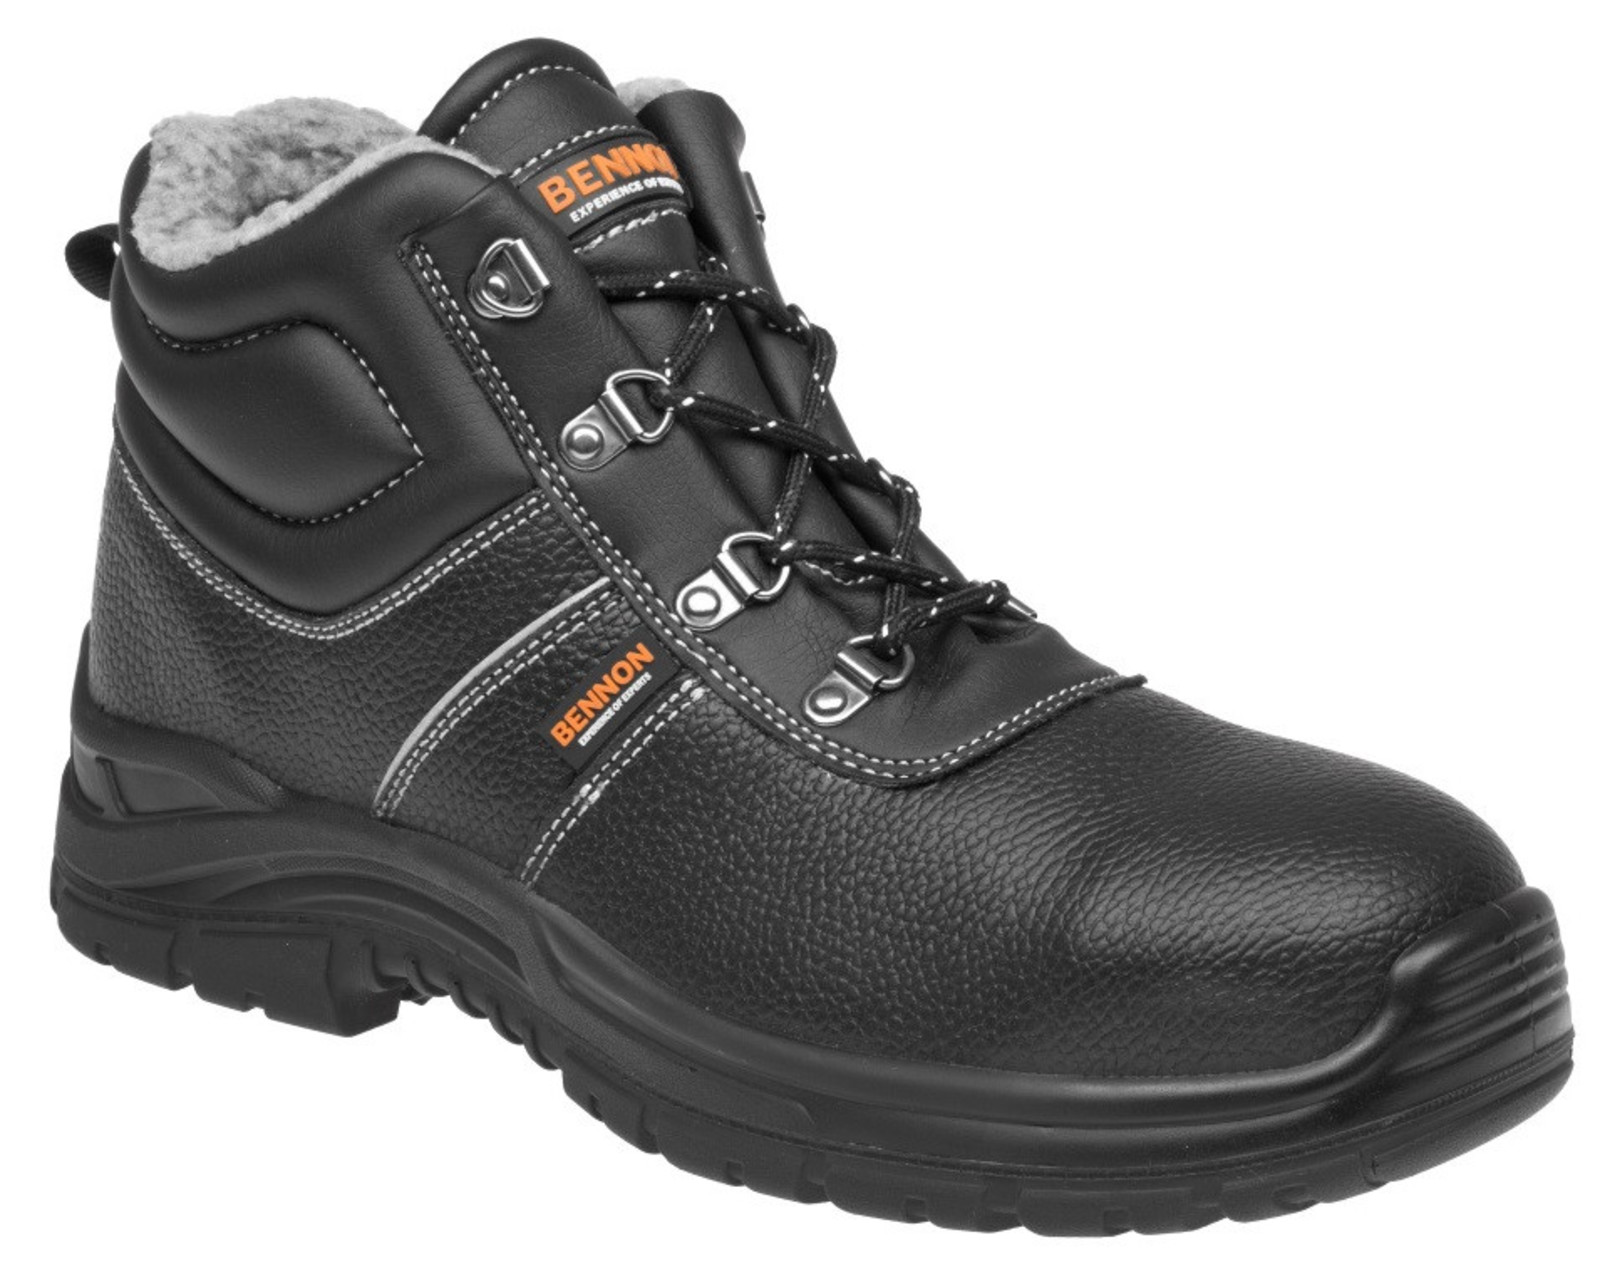 Zimná bezpečnostná obuv Bennon Basic S3 - veľkosť: 46, farba: čierna